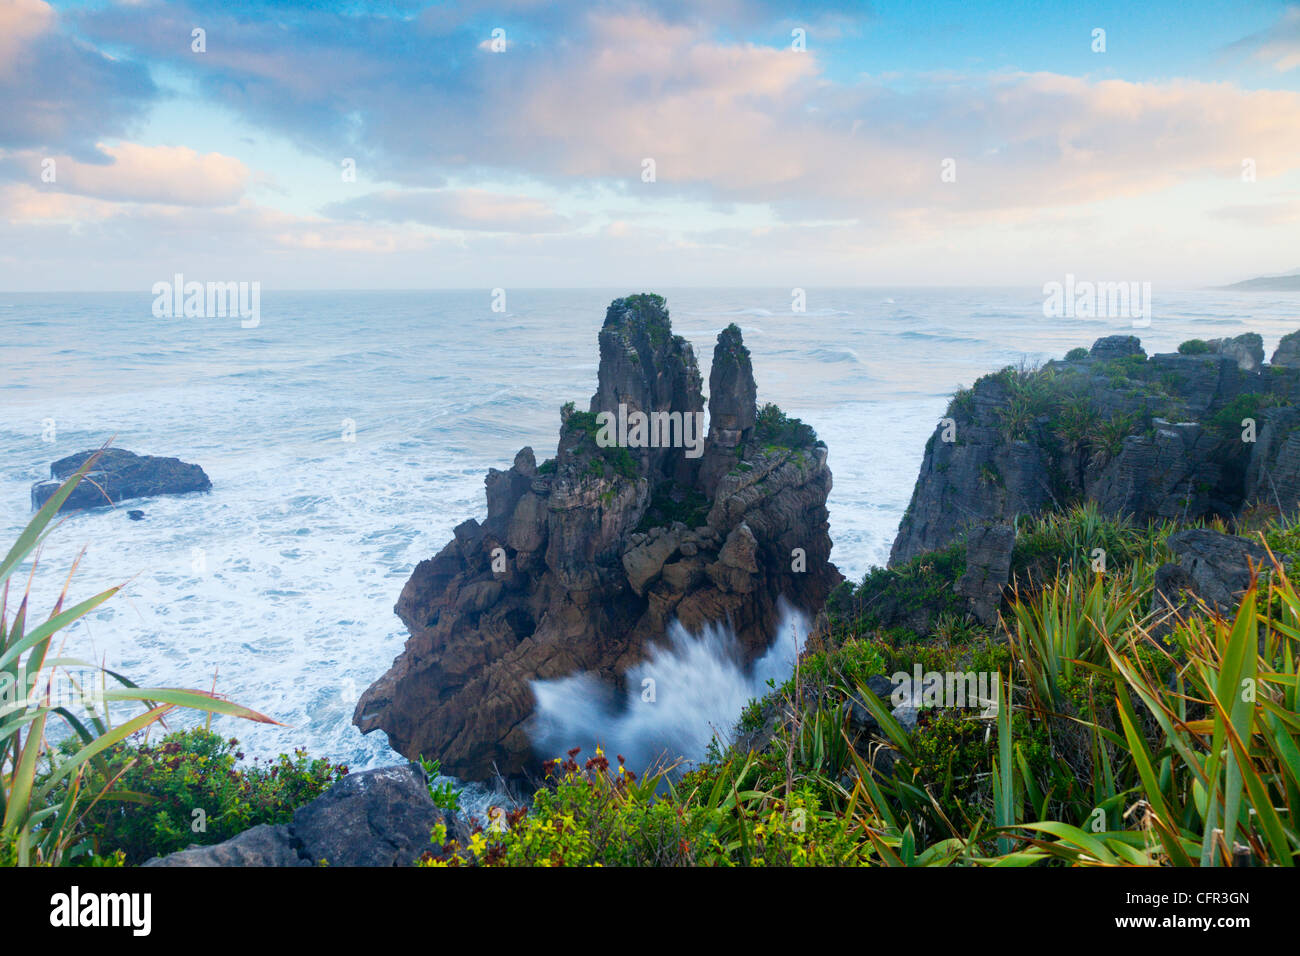 Erodiert Kalksteinformationen bekannt als Pancake Rocks, Dolomit Point, Punakaiki, an der Westküste der Südinsel Neuseelands. Stockfoto